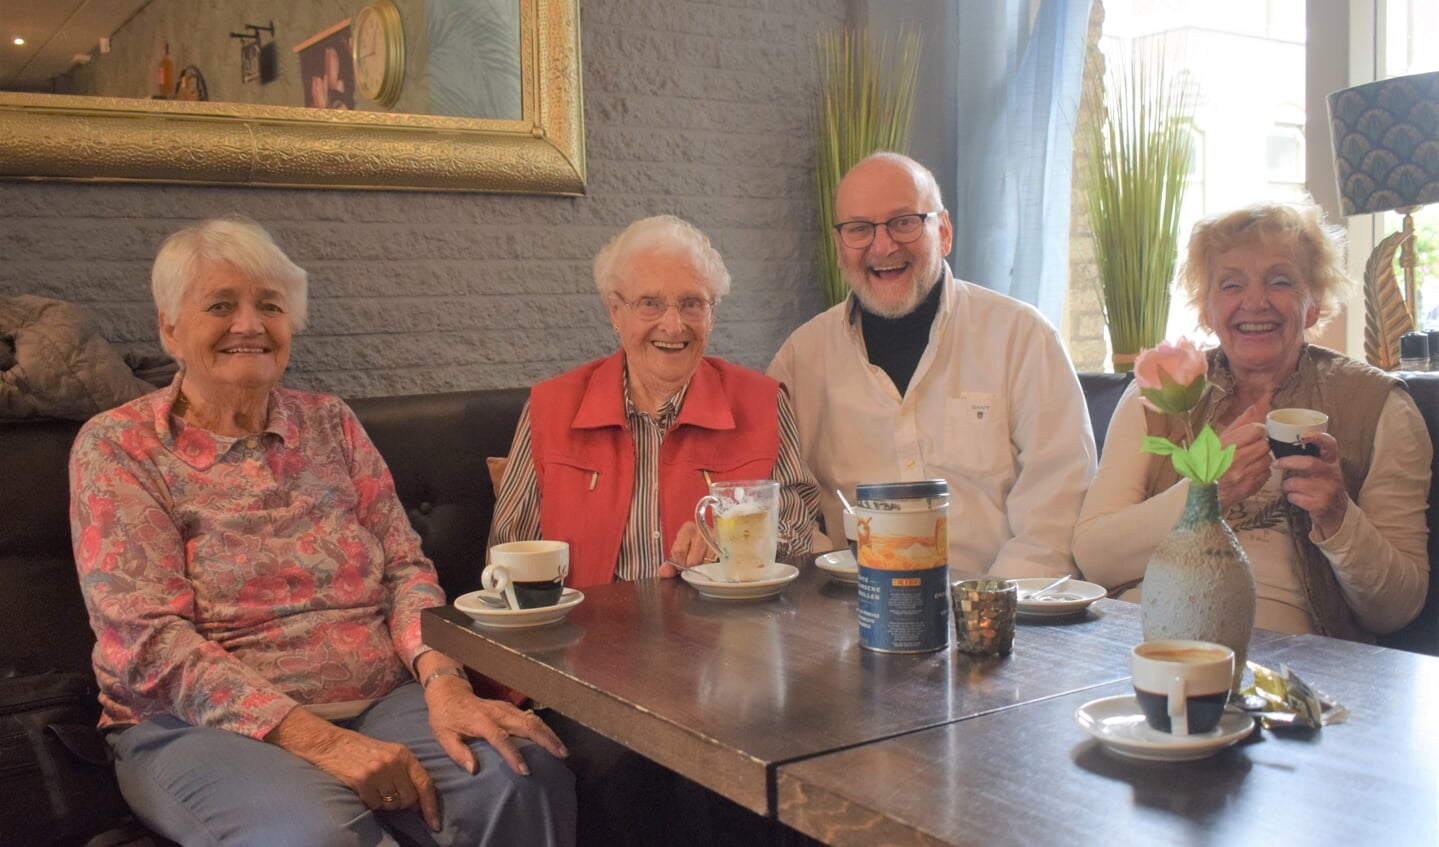 Hanny Rademaker, Jaan Hartog, Jaap Janmaat en Lonneke van Veen (vlnr) genieten van de koffie en elkaars gezelschap.